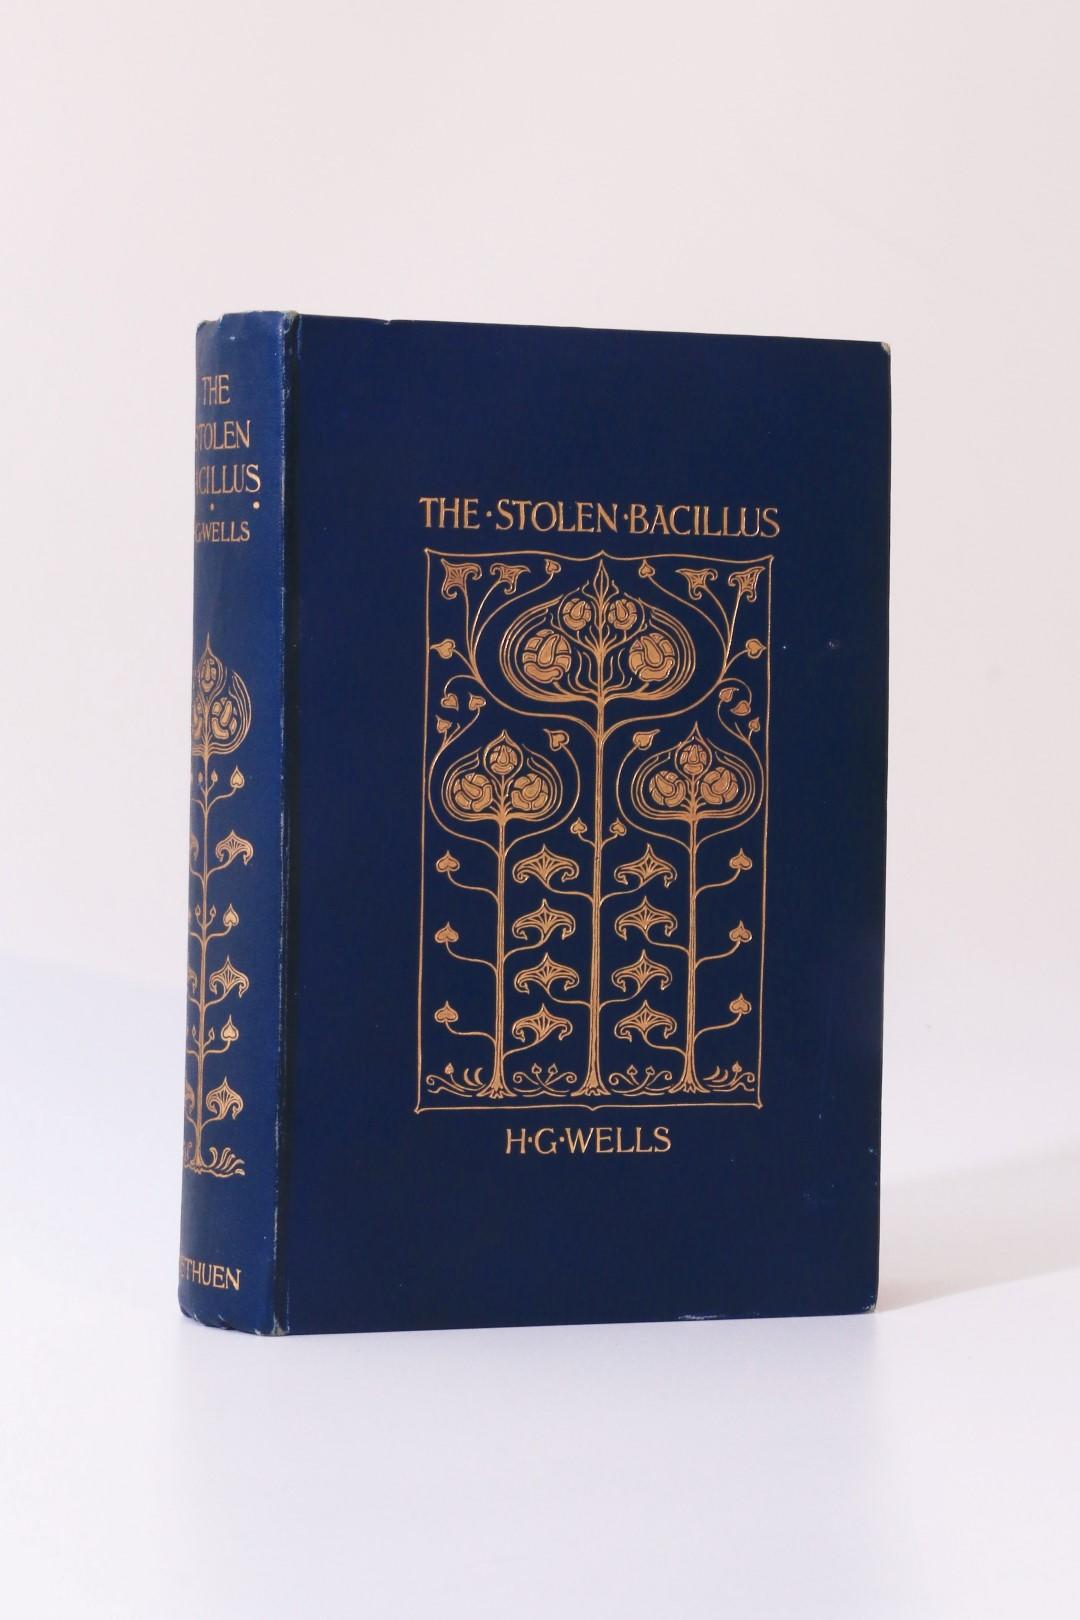 H.G. Wells - The Stolen Bacillus - Methuen, 1895, First Edition.